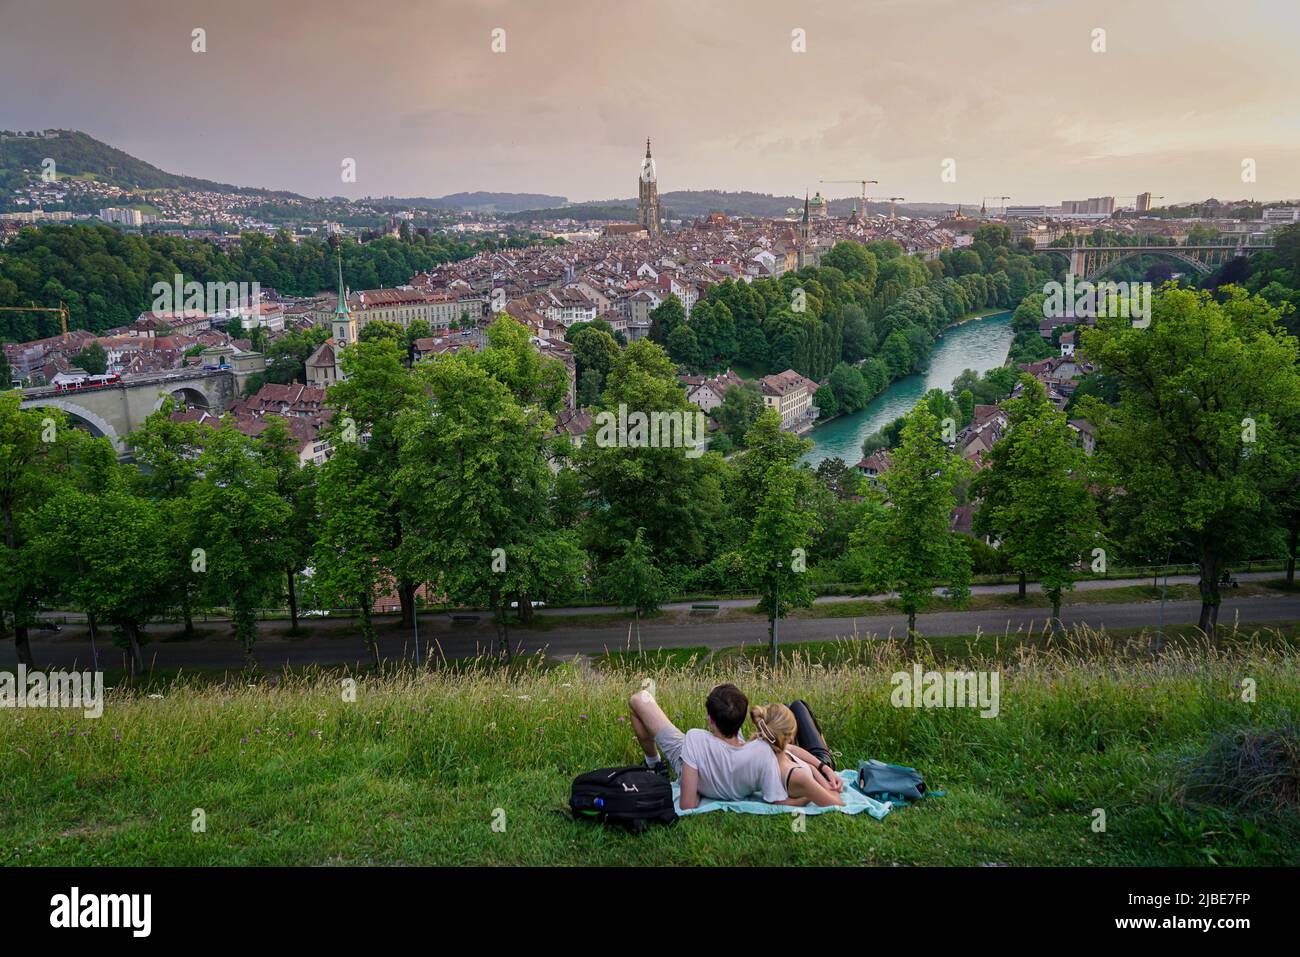 Die Menschen bewundern den herrlichen Panoramablick auf die Altstadt von Bern von oben. Bern, Schweiz - Juni 2022 Stockfoto